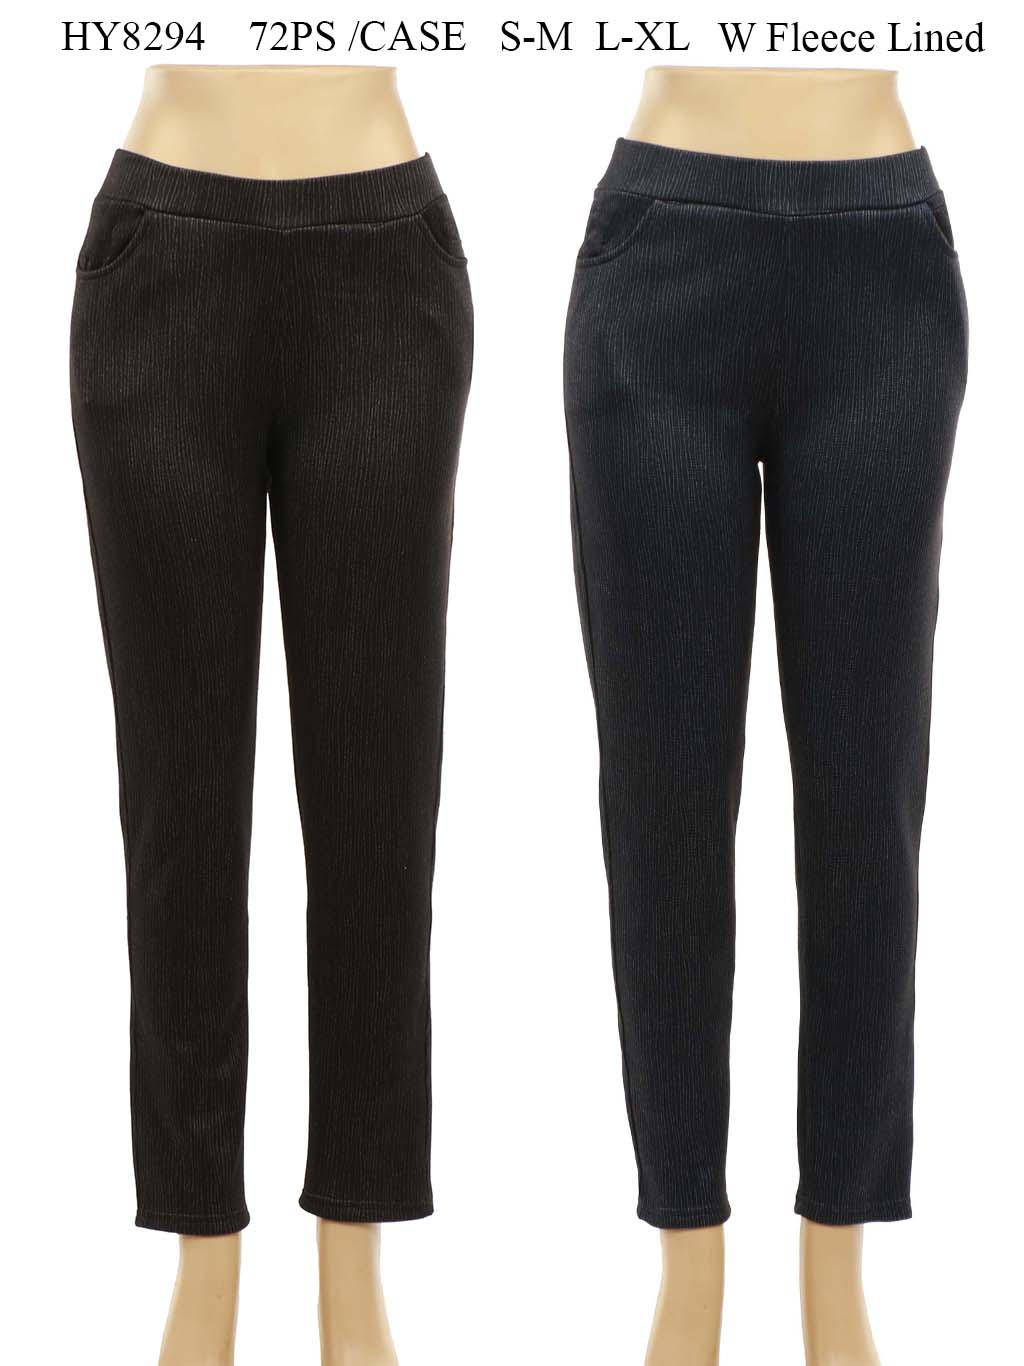 Women's Fleece Lined Pants Mix Color One Dozen Wholesale Size: S-M